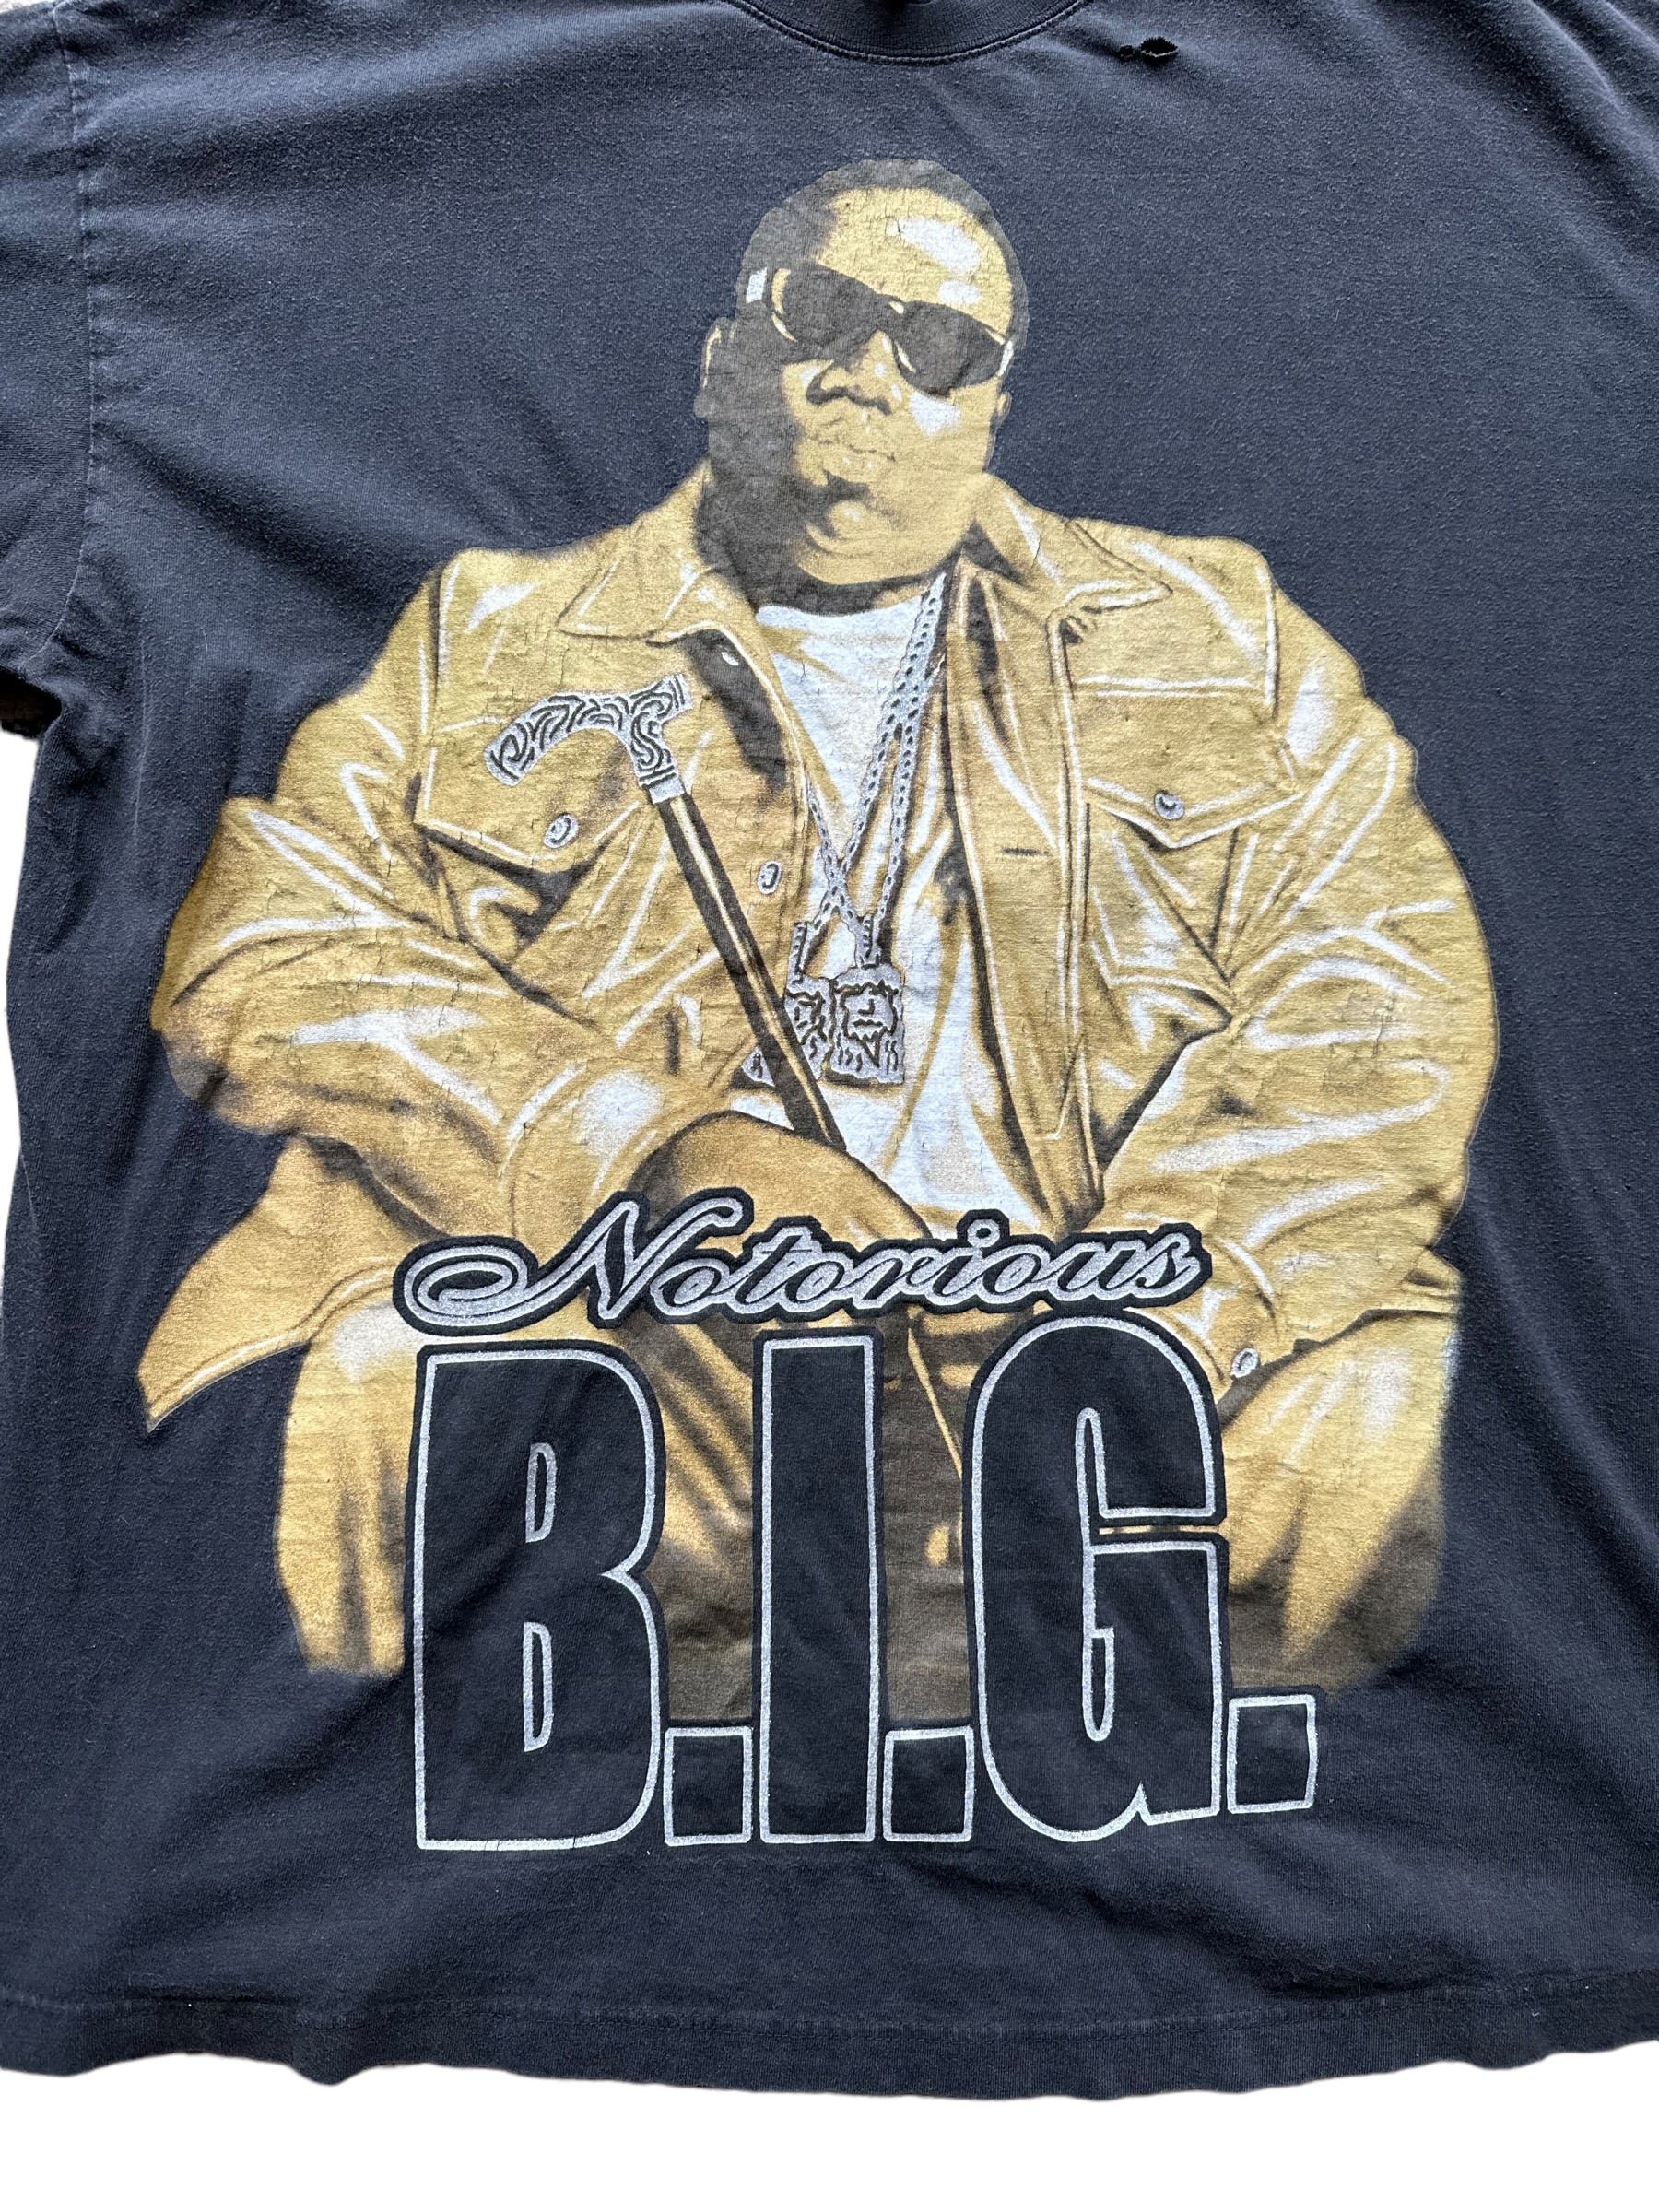 Biggie /Notorious BIG vintage rap tee